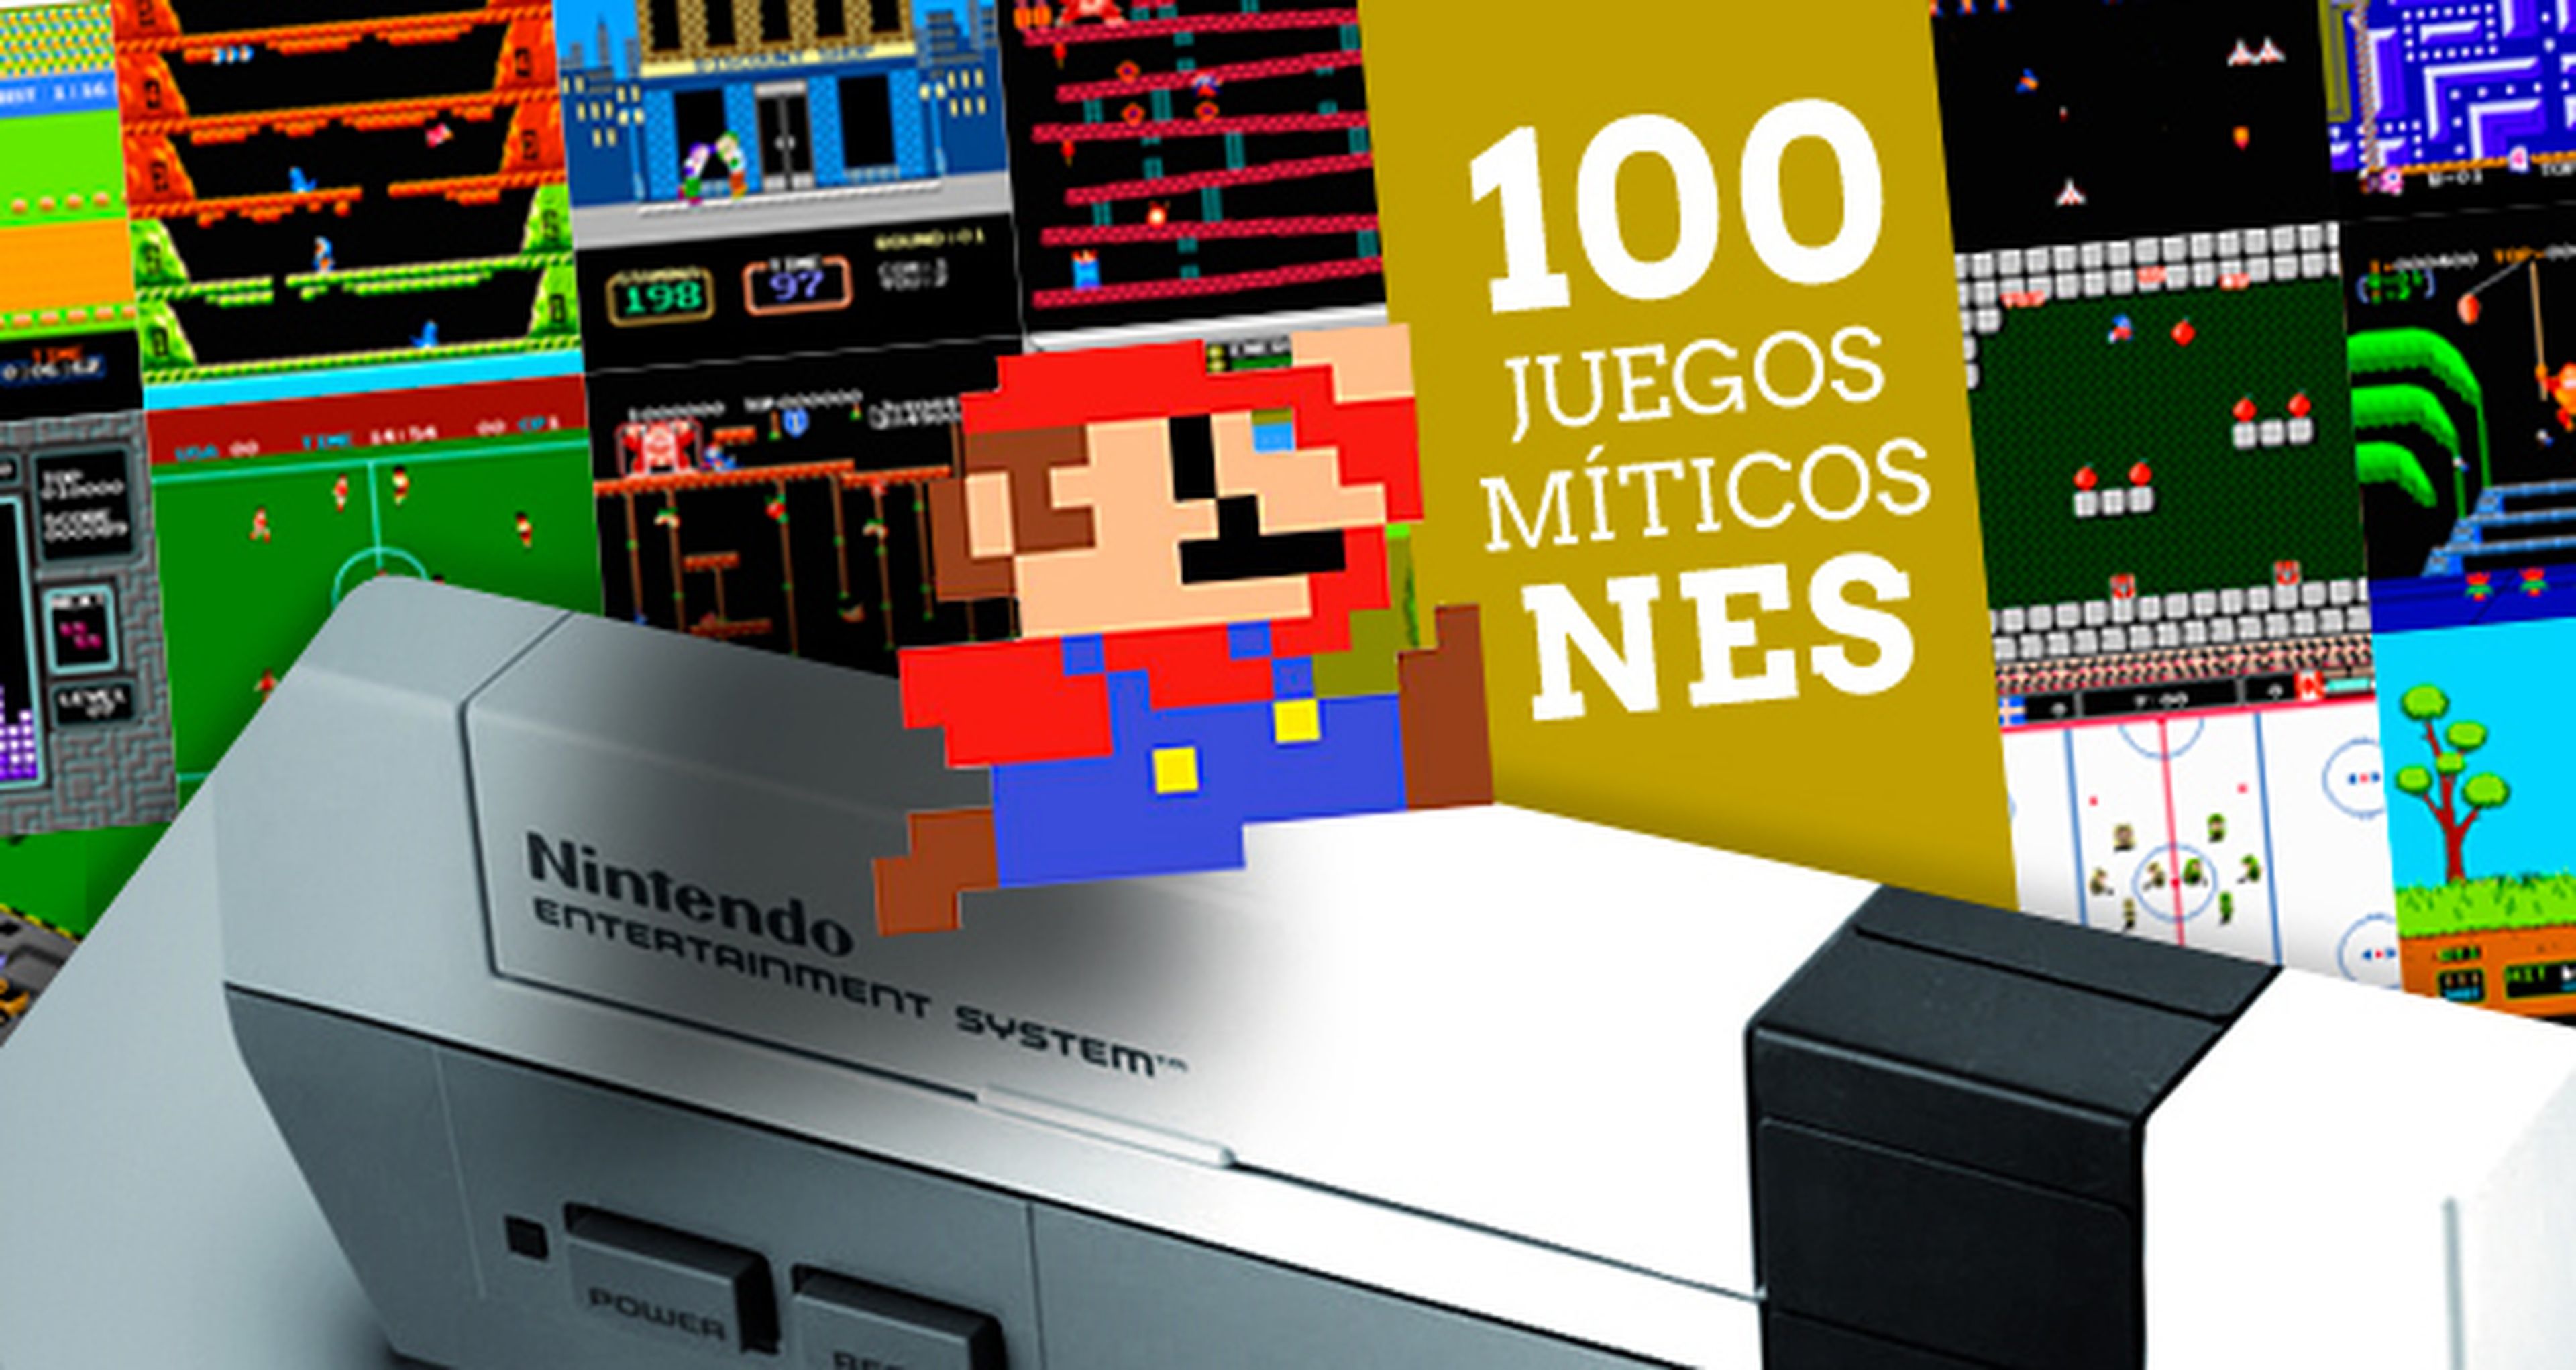 Los 100 juegos míticos de NES